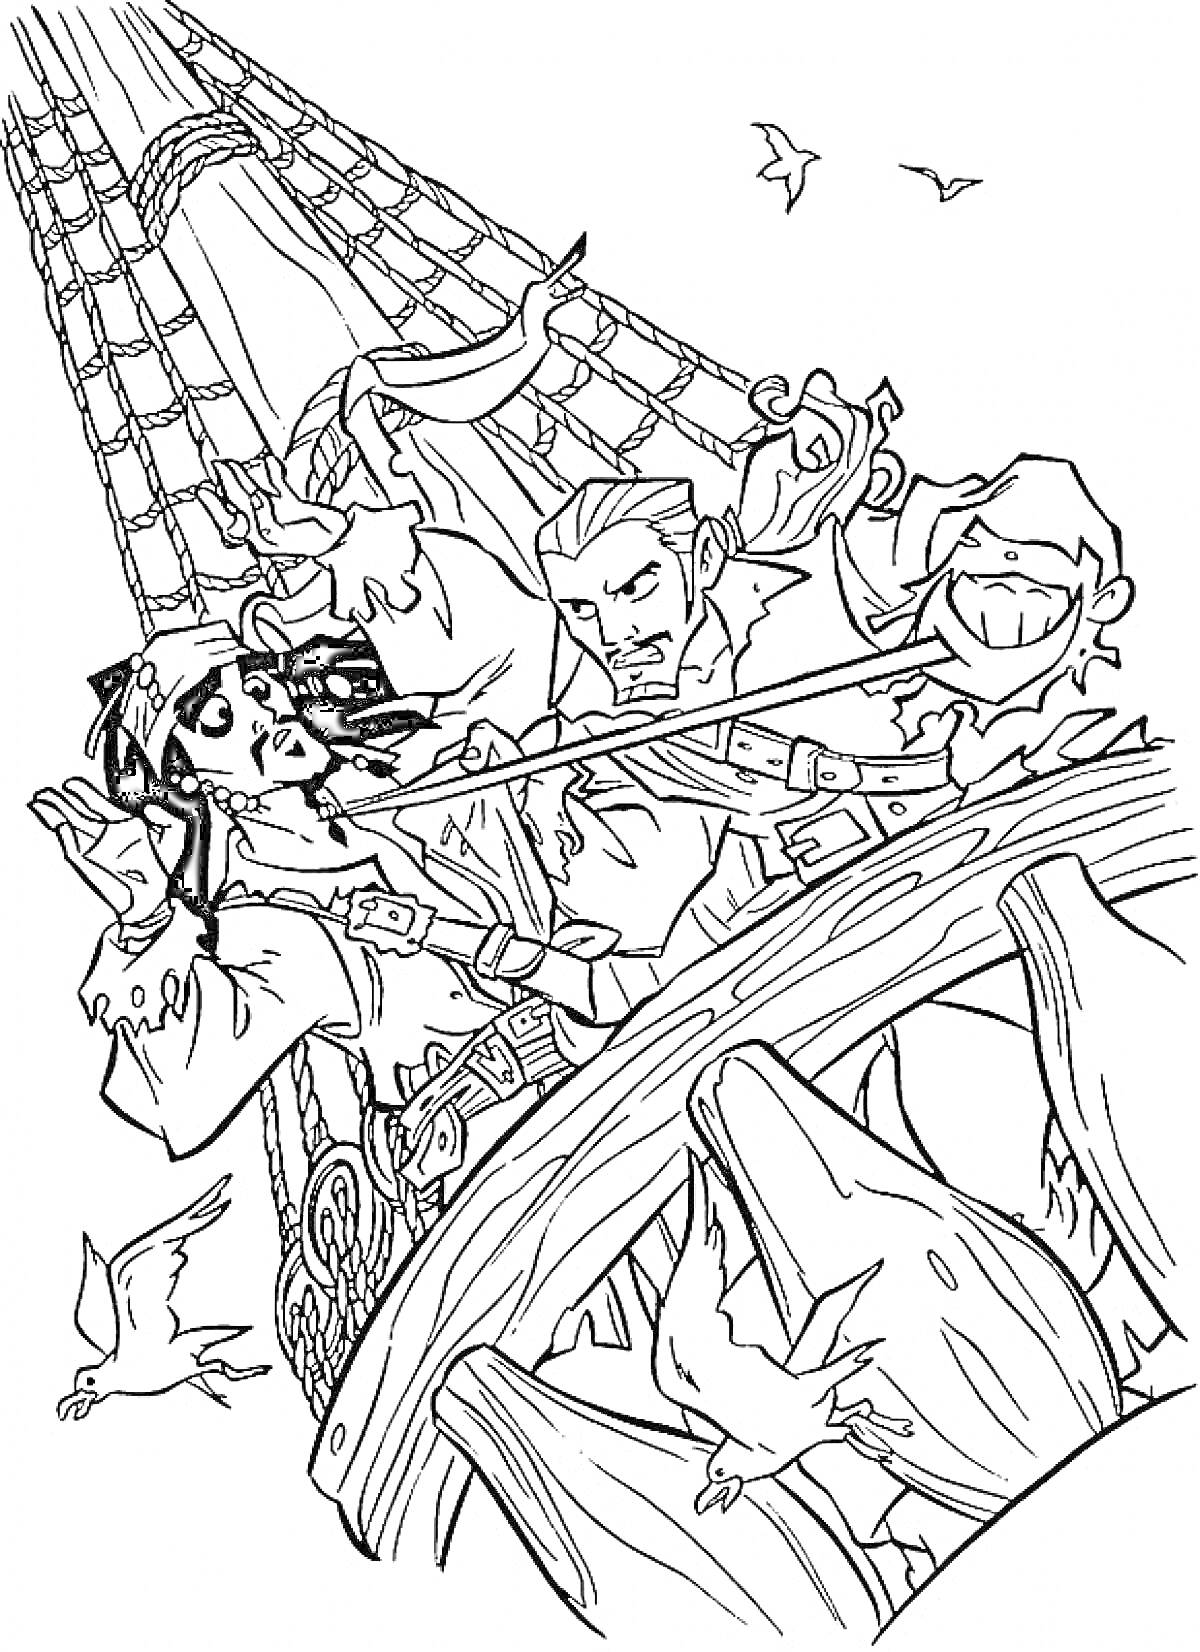 Драка пиратов на корабле с попугаем, корабельной оснасткой и чайками